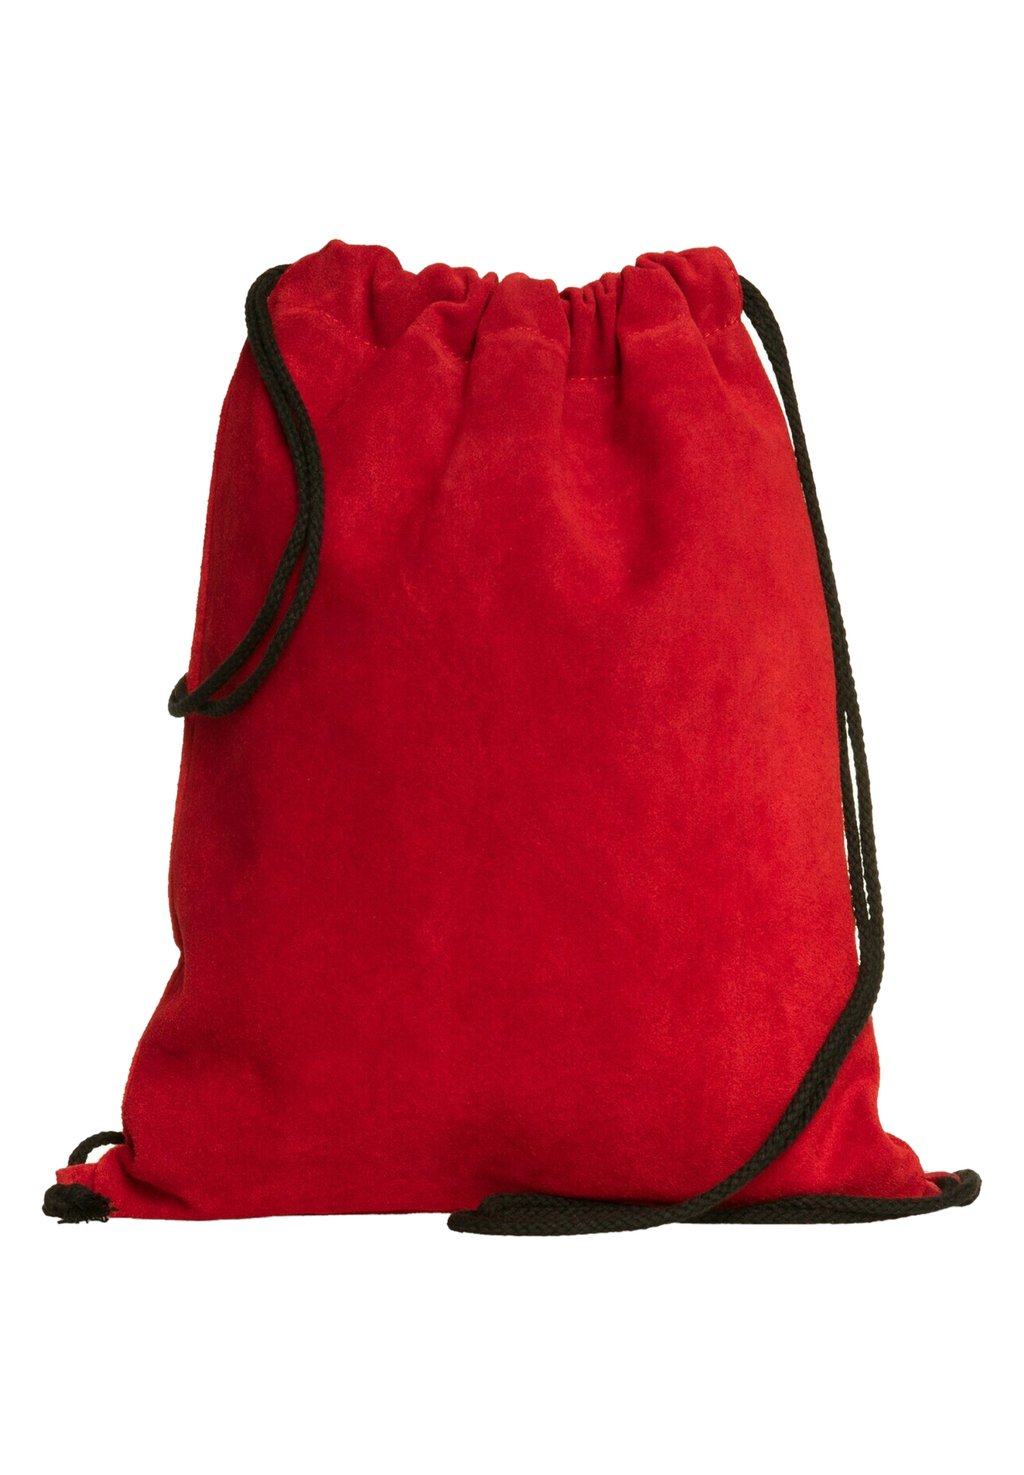 Рюкзак Caspar, цвет rot рюкзак fireman sam цвет rot